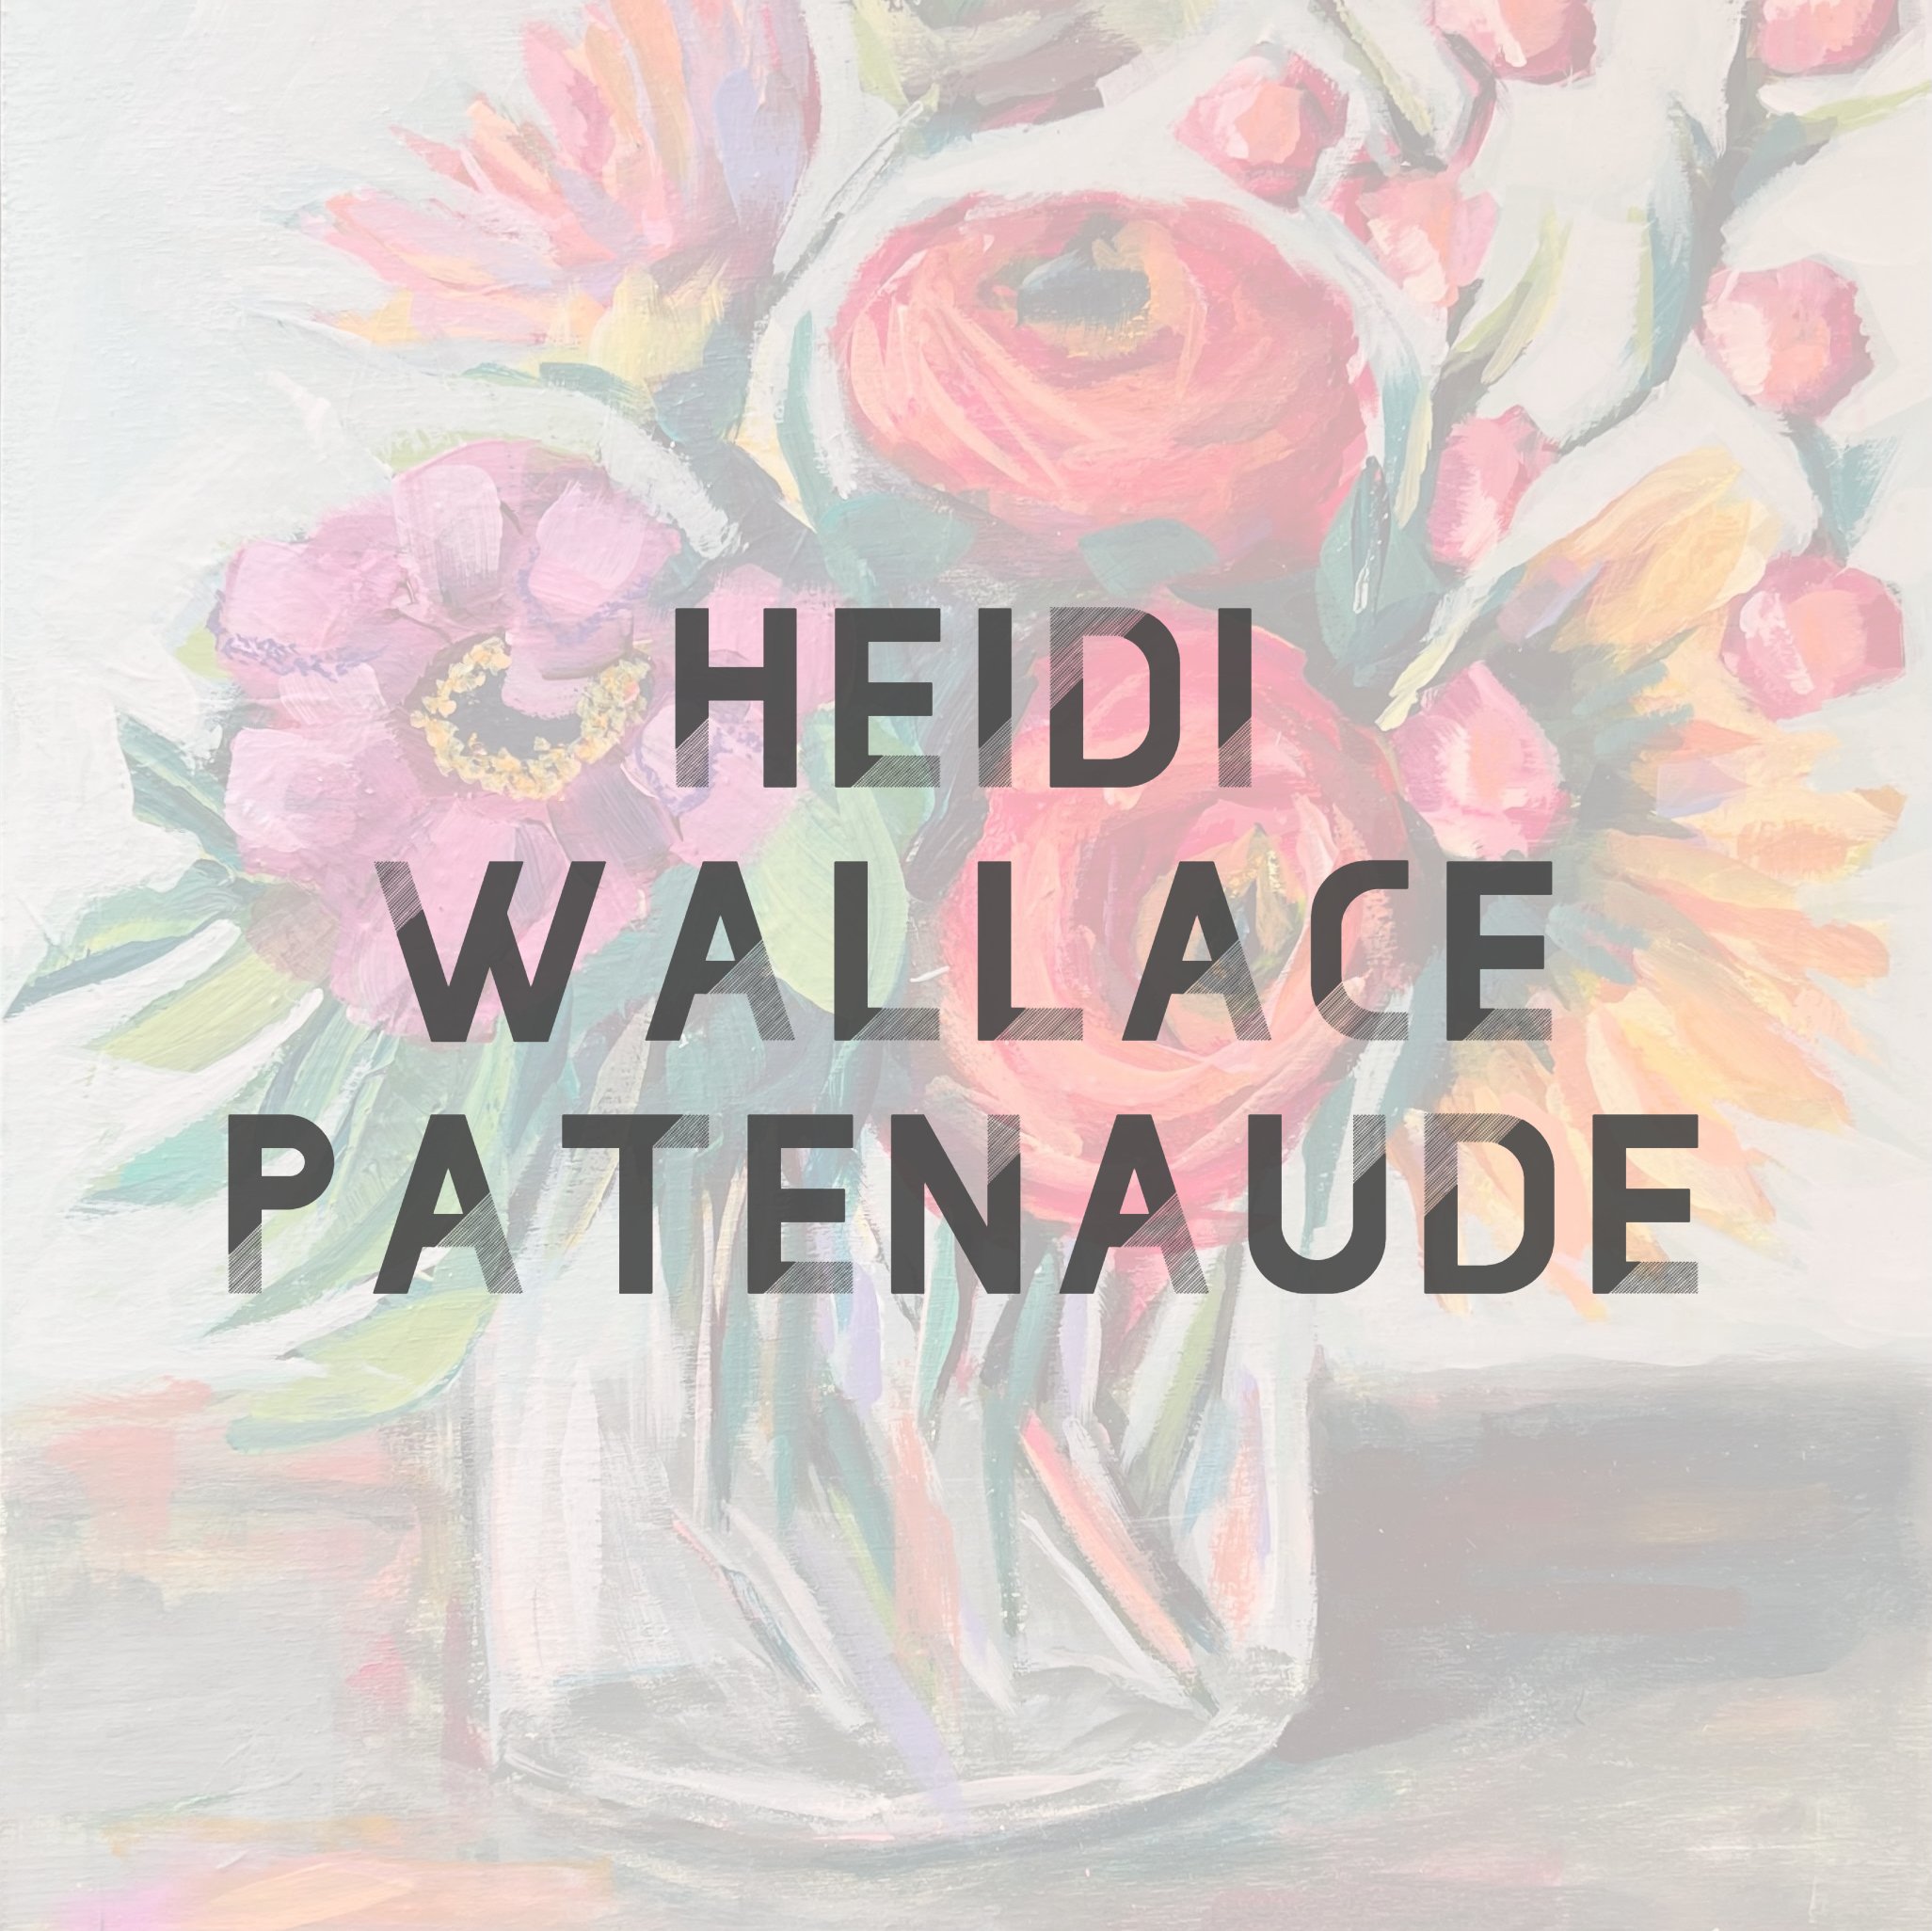 Heidi Wallace Patenaude.jpg